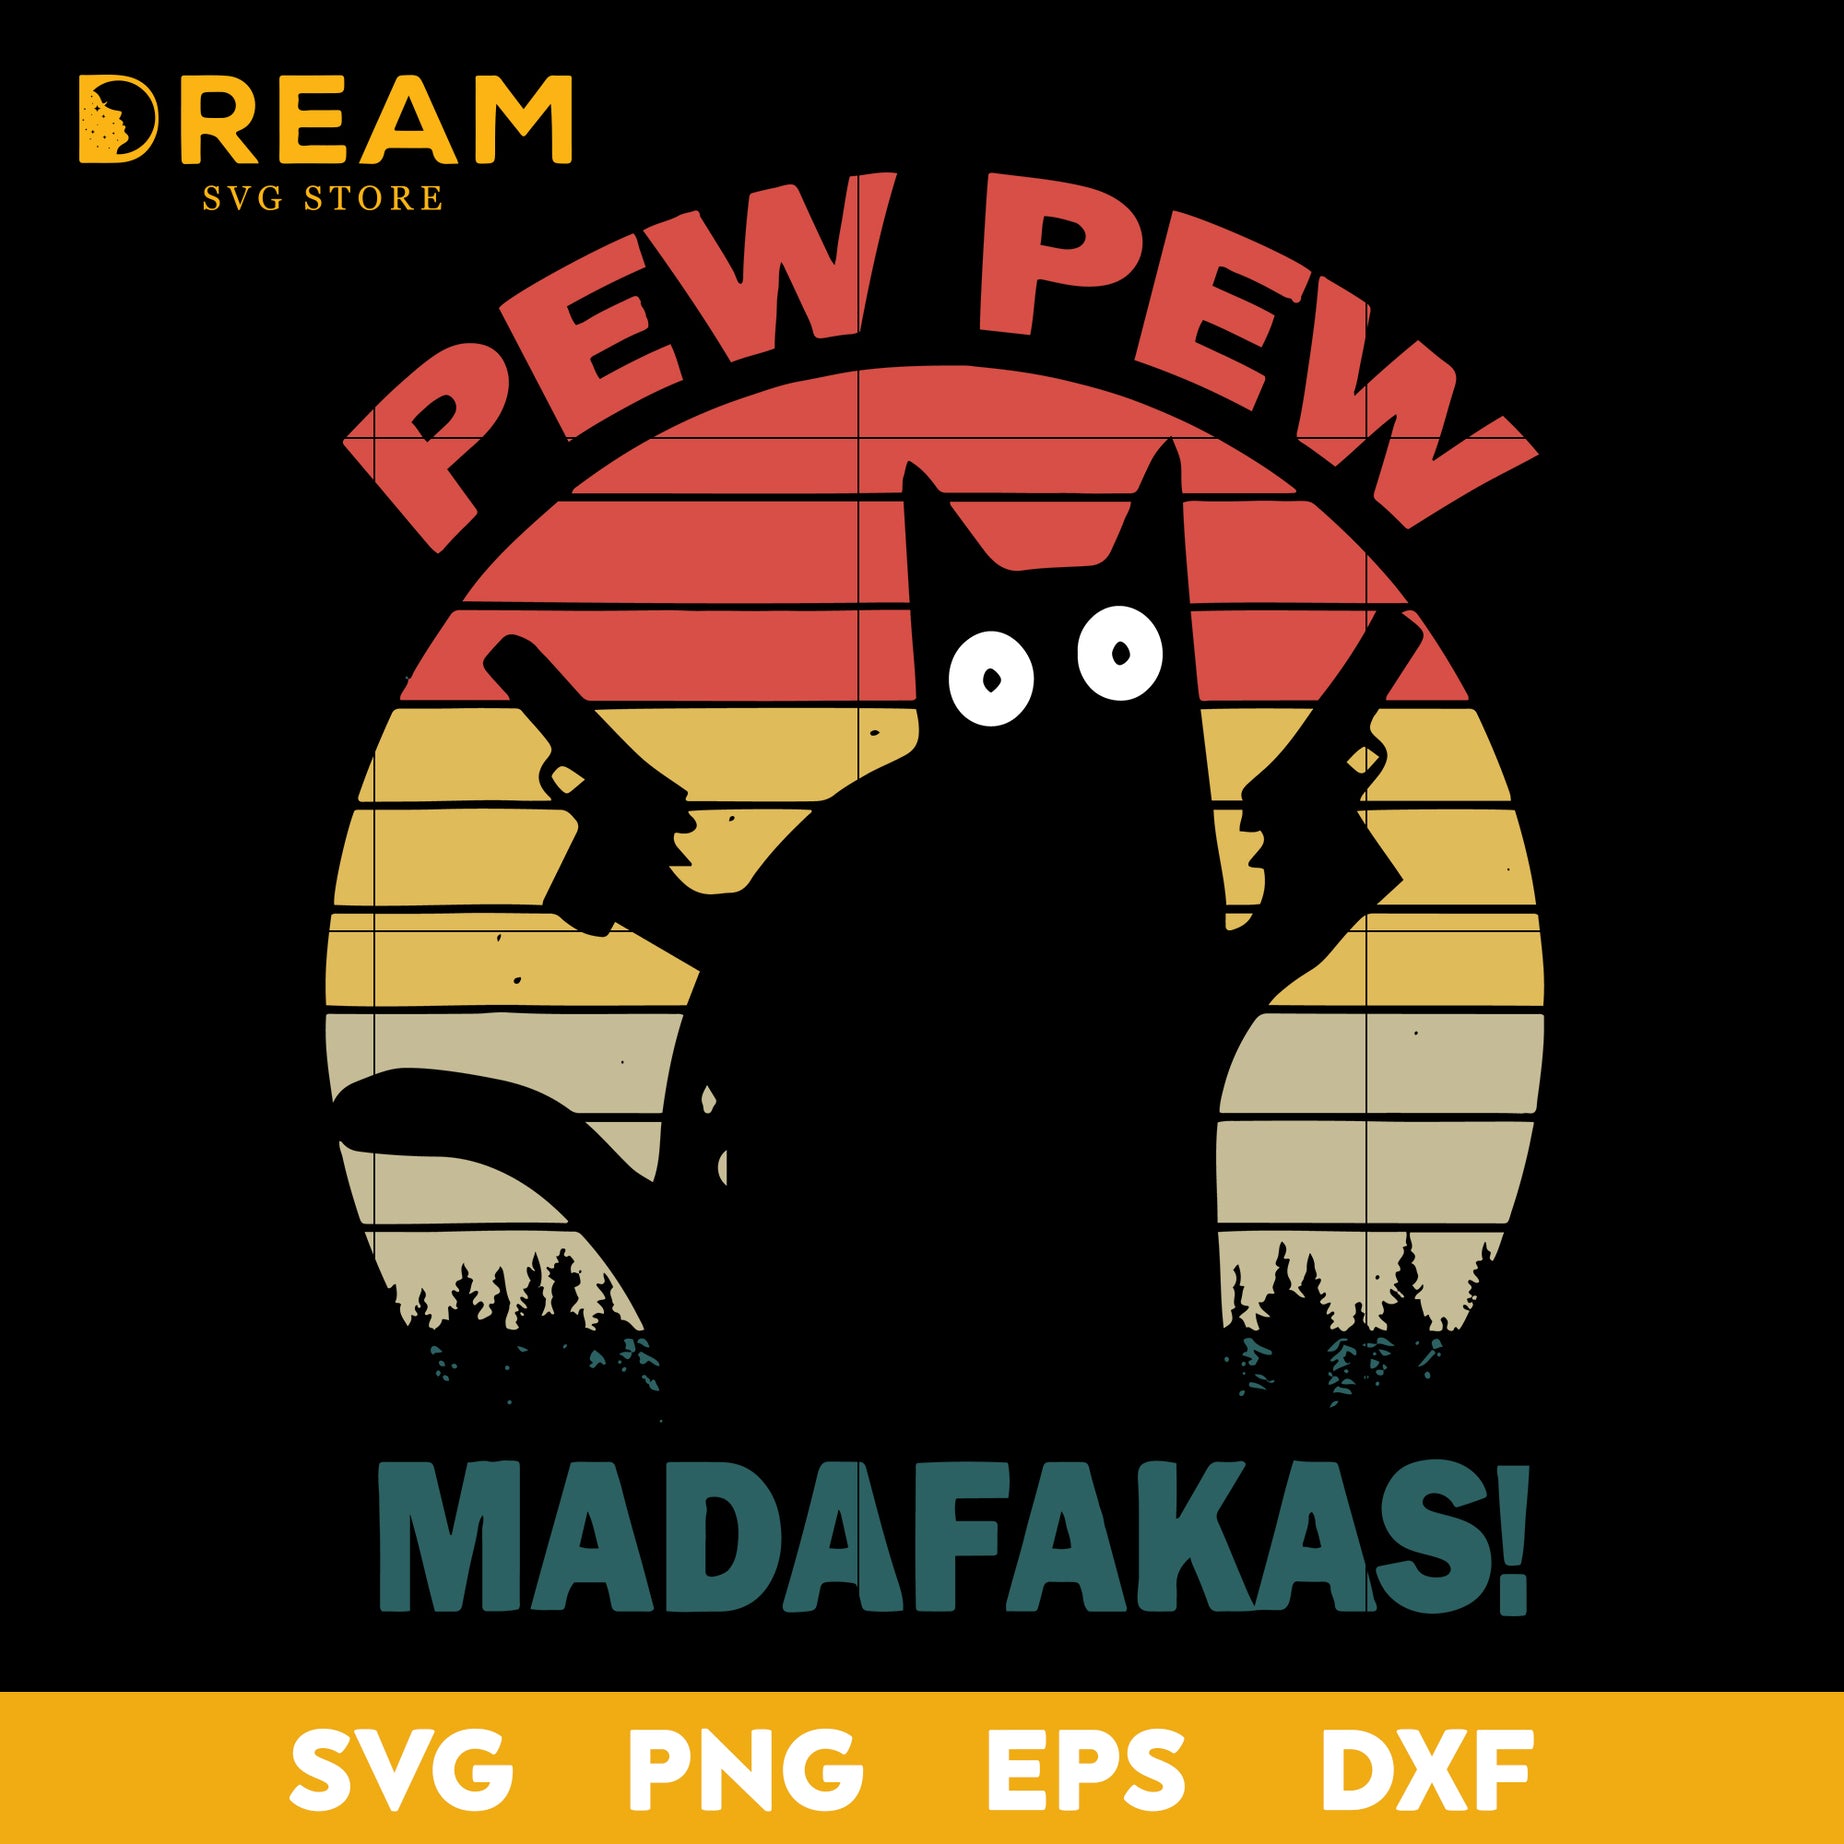 PewPew Madafakas Cat svg,Madafakas Cat svg, cat svg, funny cat svg, Halloween svg, png, dxf, eps digital file HLW1409203L